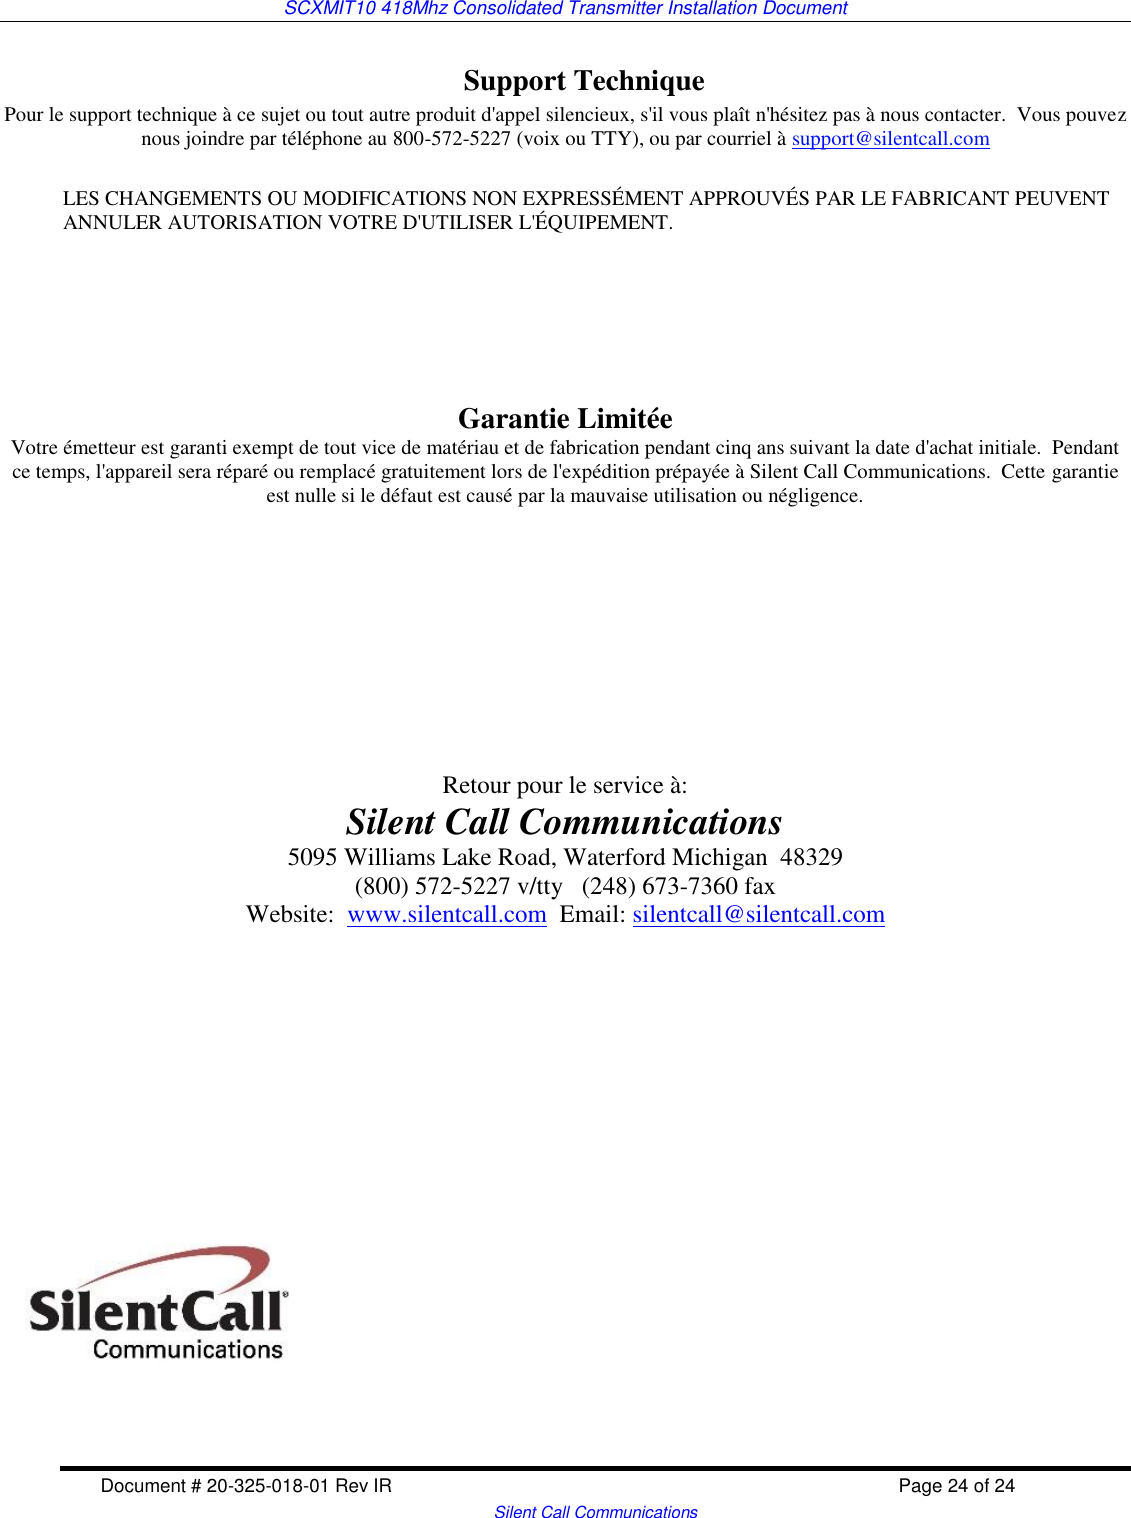 SCXMIT10 418Mhz Consolidated Transmitter Installation Document  Document # 20-325-018-01 Rev IR    Page 24 of 24   Silent Call Communications Support Technique Pour le support technique à ce sujet ou tout autre produit d&apos;appel silencieux, s&apos;il vous plaît n&apos;hésitez pas à nous contacter.  Vous pouvez nous joindre par téléphone au 800-572-5227 (voix ou TTY), ou par courriel à support@silentcall.com  LES CHANGEMENTS OU MODIFICATIONS NON EXPRESSÉMENT APPROUVÉS PAR LE FABRICANT PEUVENT ANNULER AUTORISATION VOTRE D&apos;UTILISER L&apos;ÉQUIPEMENT.      Garantie Limitée Votre émetteur est garanti exempt de tout vice de matériau et de fabrication pendant cinq ans suivant la date d&apos;achat initiale.  Pendant ce temps, l&apos;appareil sera réparé ou remplacé gratuitement lors de l&apos;expédition prépayée à Silent Call Communications.  Cette garantie est nulle si le défaut est causé par la mauvaise utilisation ou négligence.            Retour pour le service à: Silent Call Communications 5095 Williams Lake Road, Waterford Michigan  48329 (800) 572-5227 v/tty   (248) 673-7360 fax Website:  www.silentcall.com  Email: silentcall@silentcall.com   